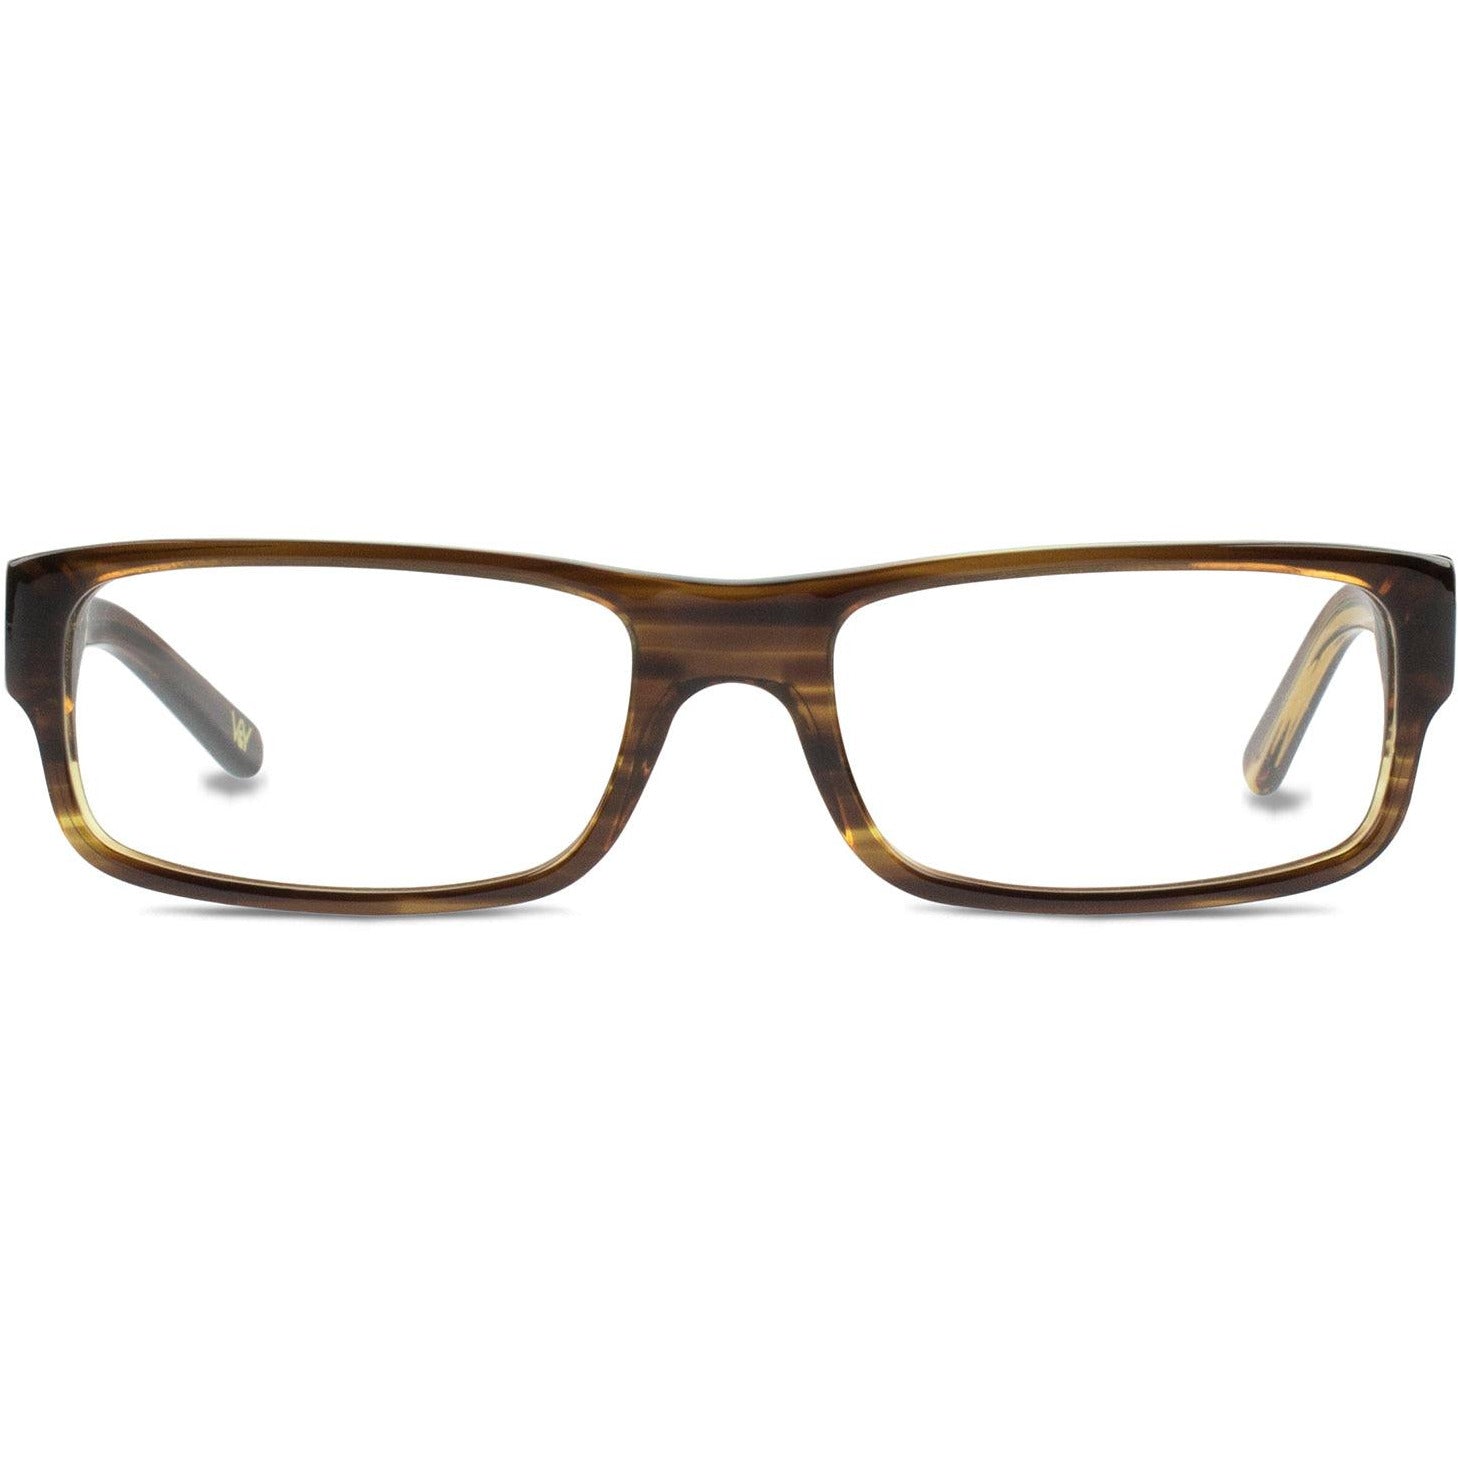 Talkie Rectangular Frame in Sepia Brown Eyeglasses High End Designer Prescription Glasses Blue Light - Vint & York